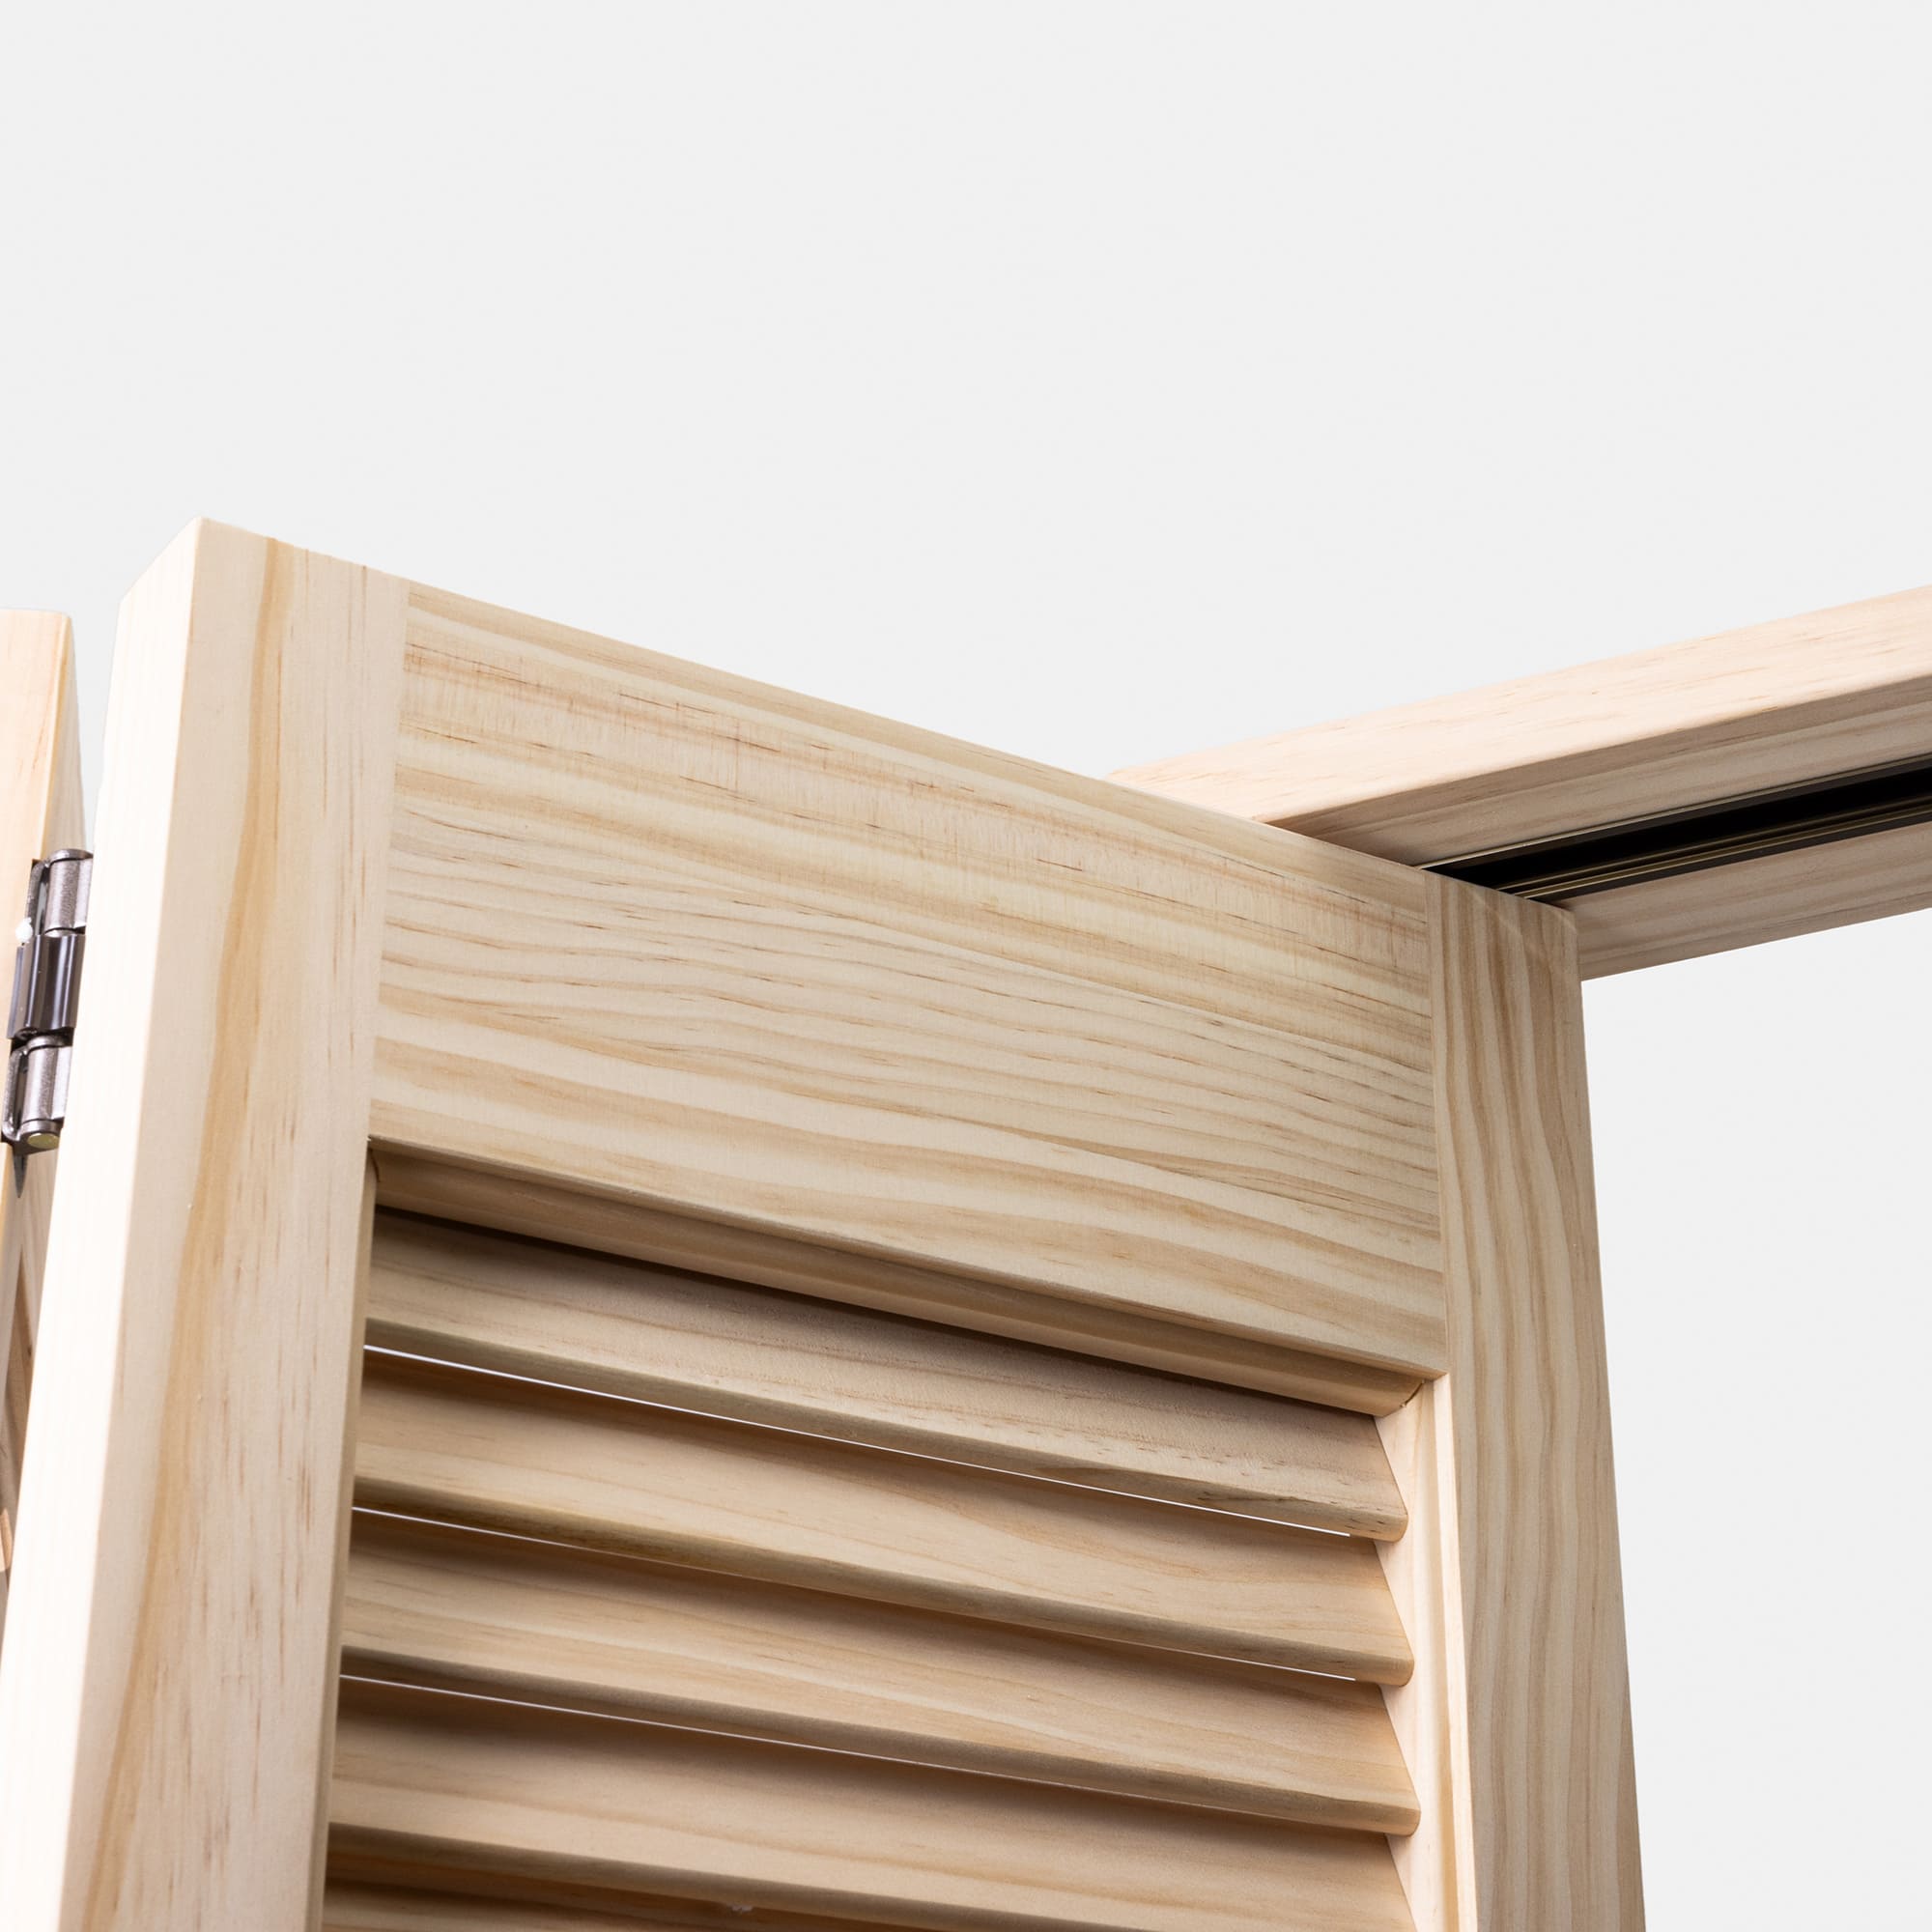 木製パインルーバー折れ戸 両開き 1509×2007 DW-DR011-04-G111 折れ戸なので開きのスペースを取りません